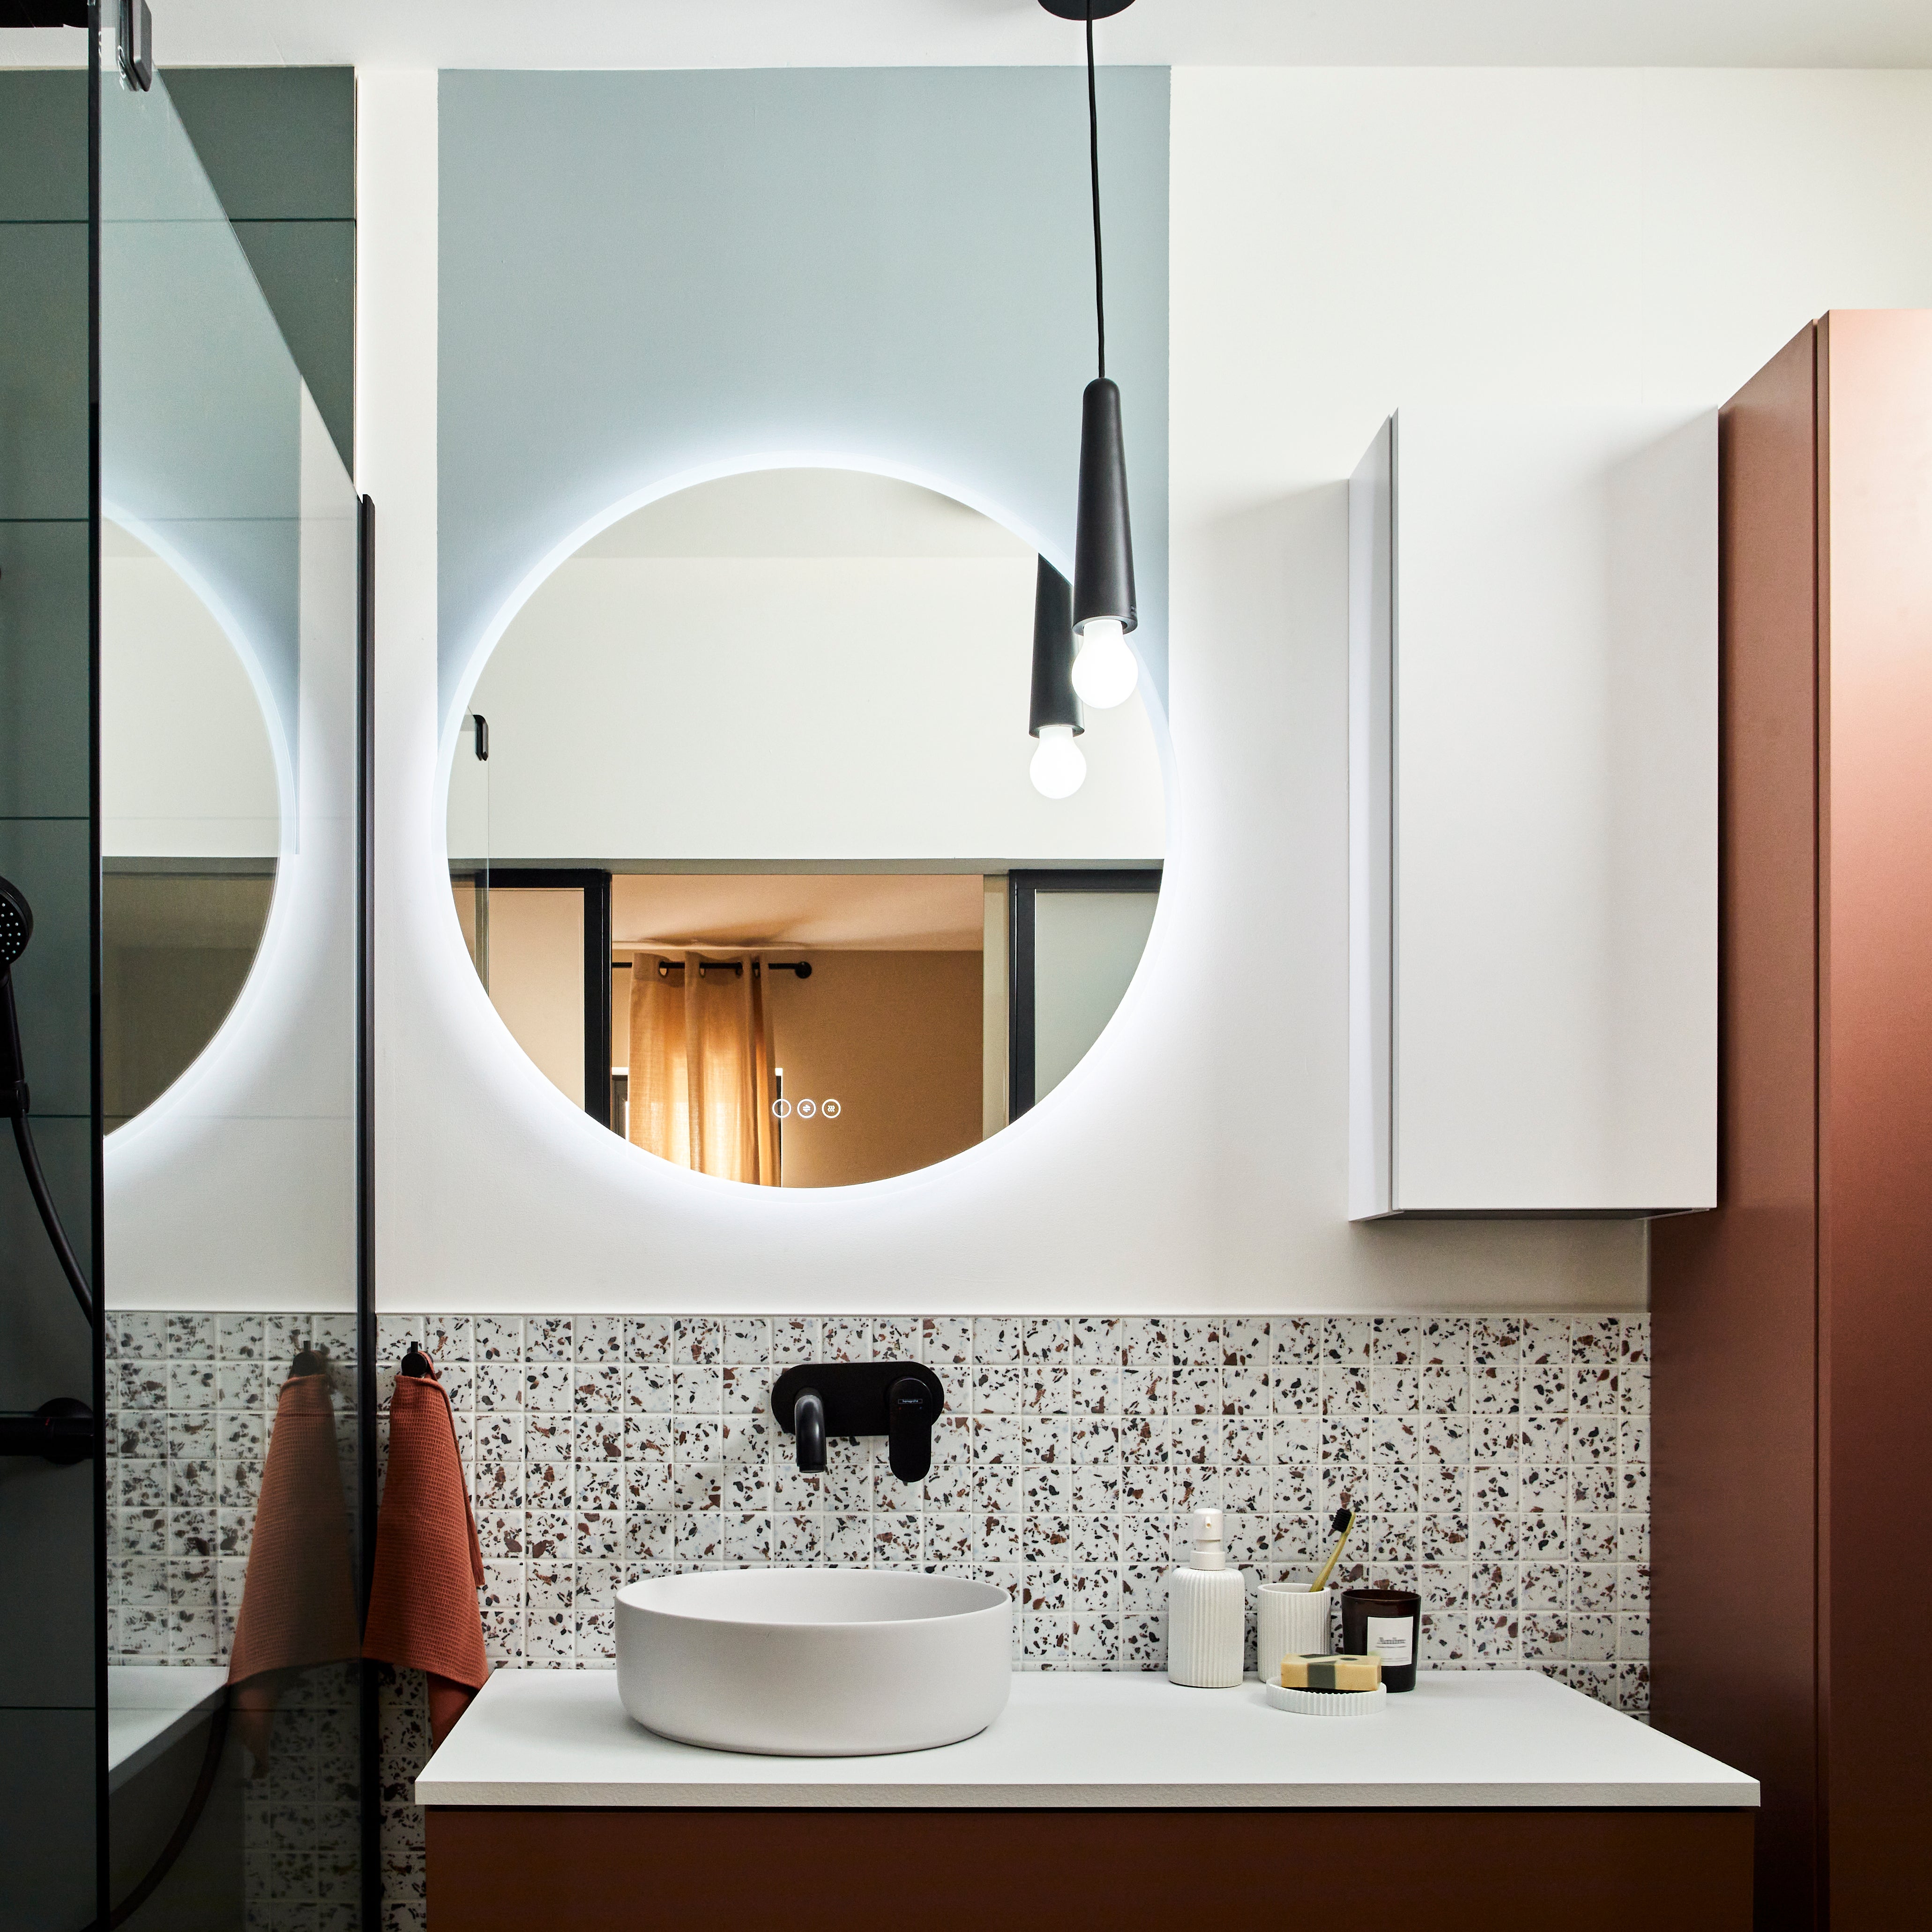 Miroir lumineux salle de bain LED 75 x 66 cm avec bouton sensitif